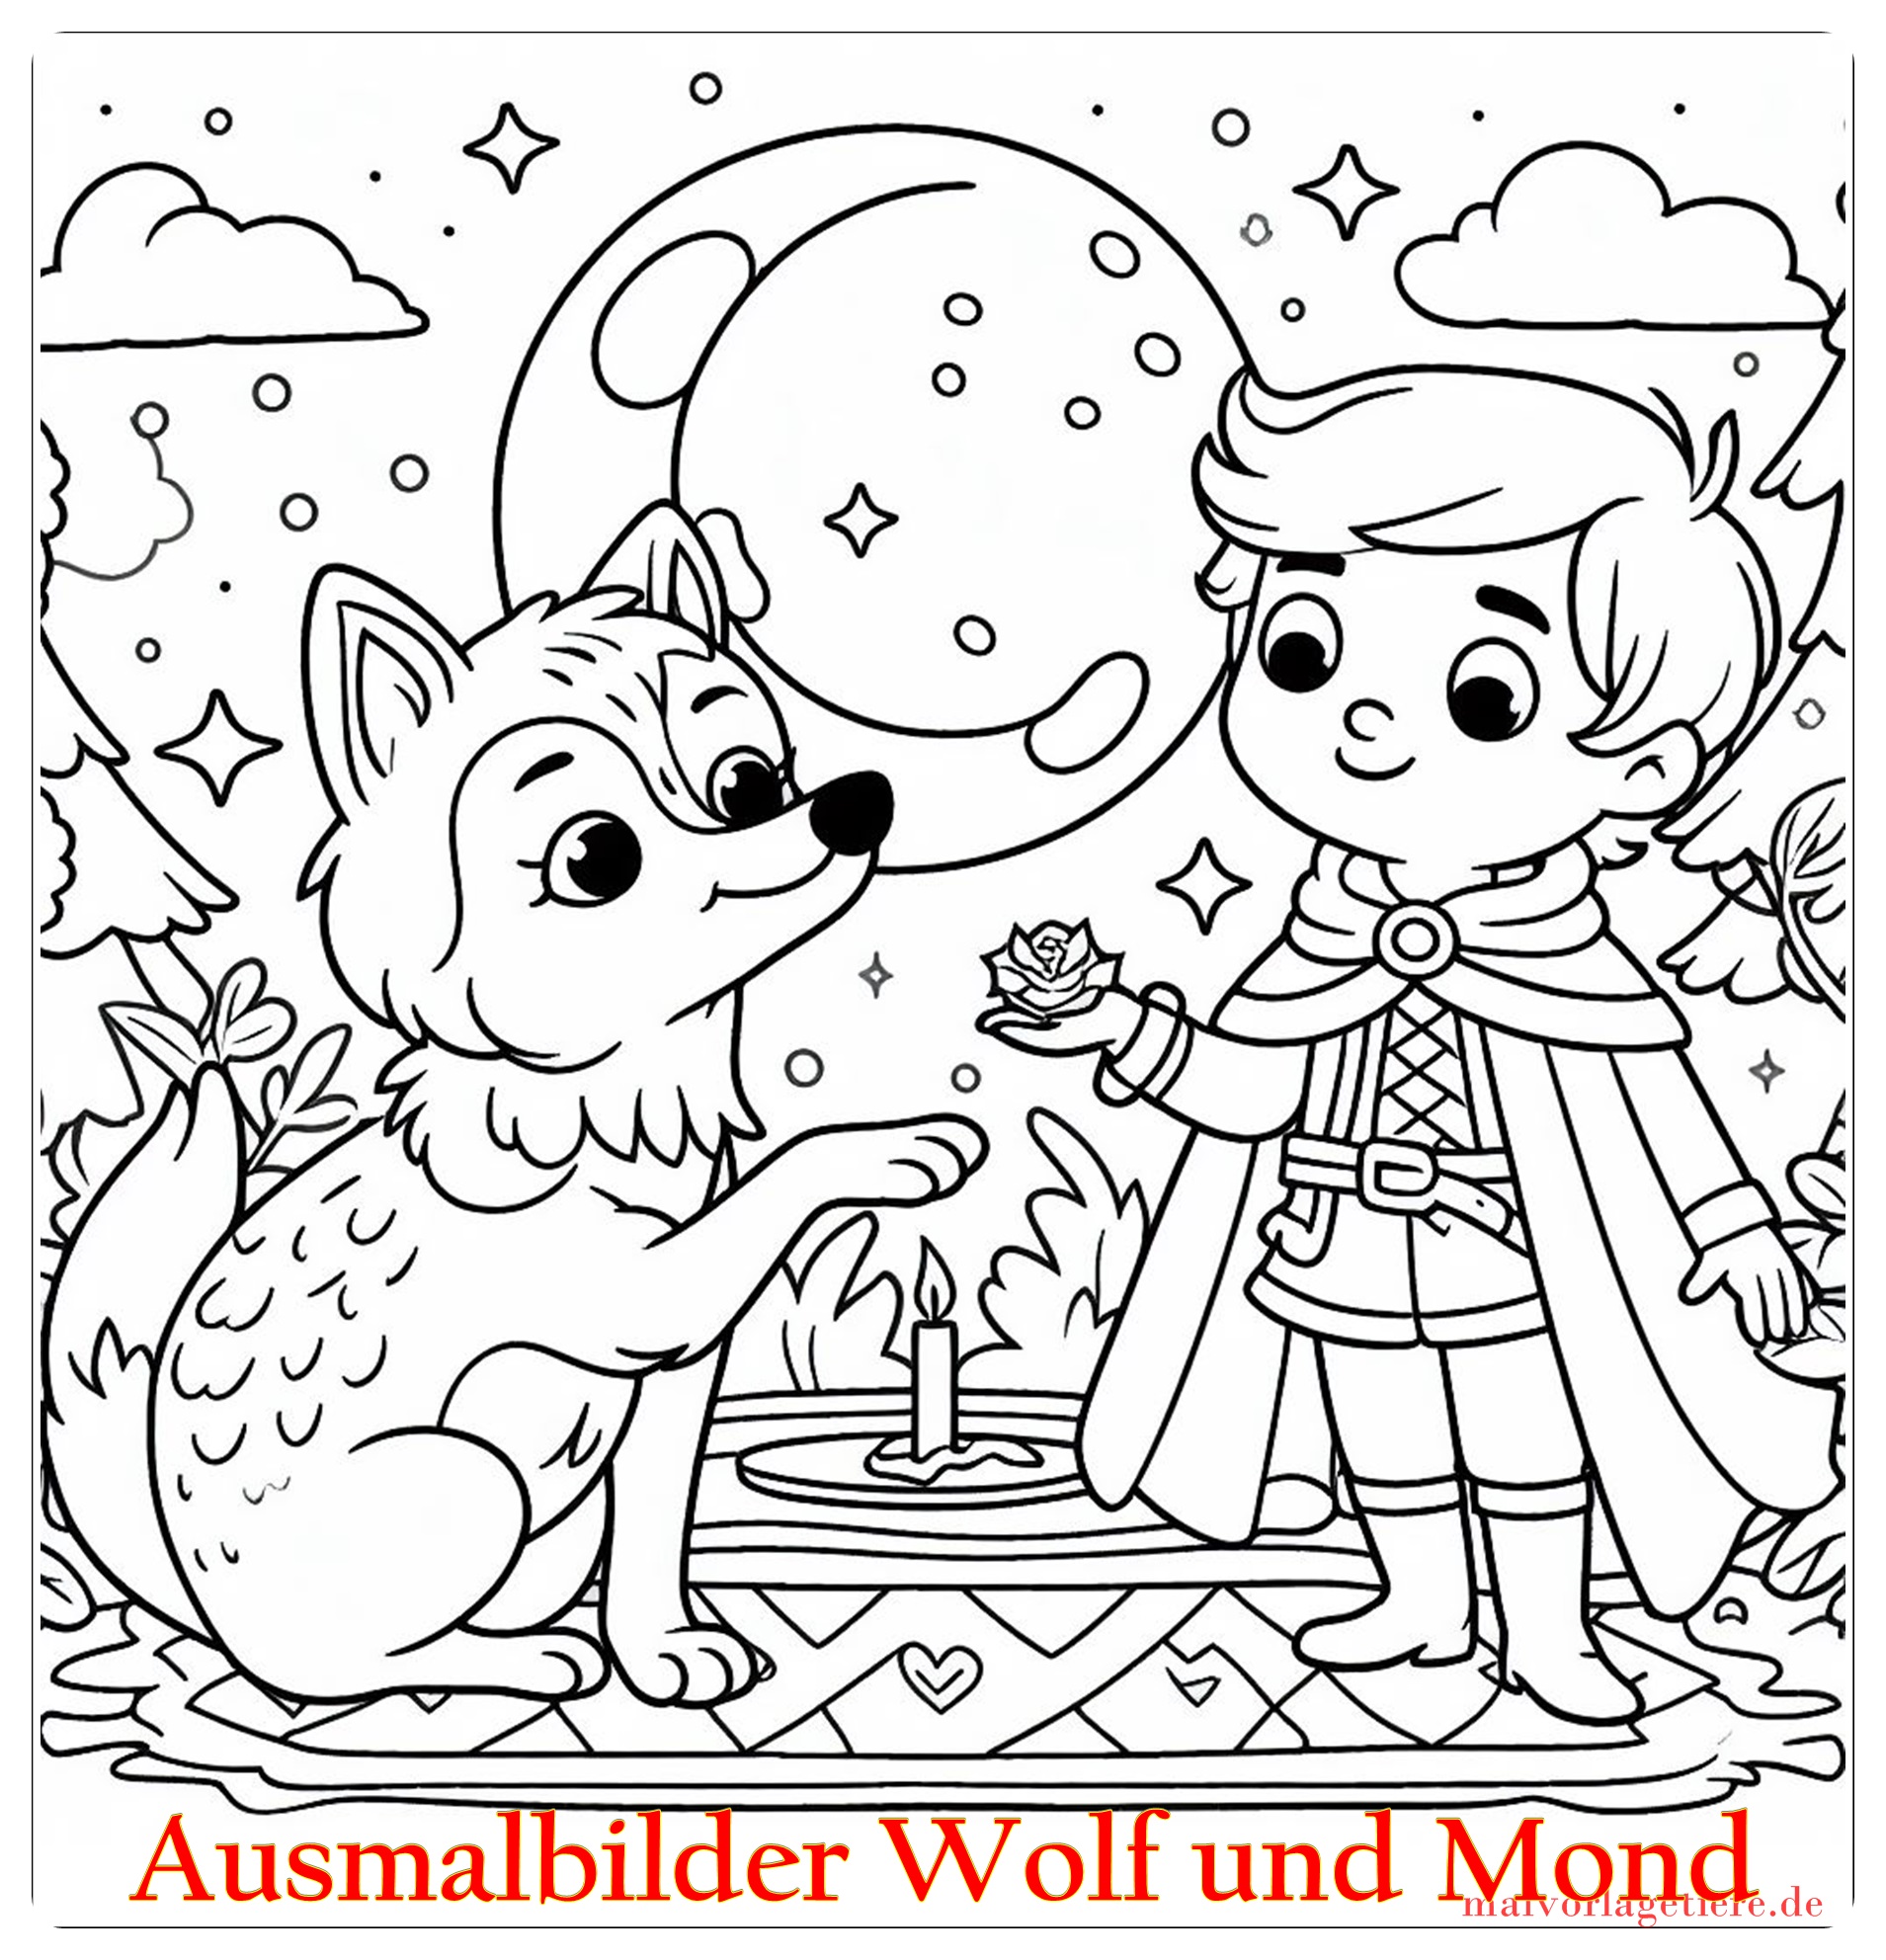 Ausmalbilder Wolf und Mond 05 by malvorlagetiere